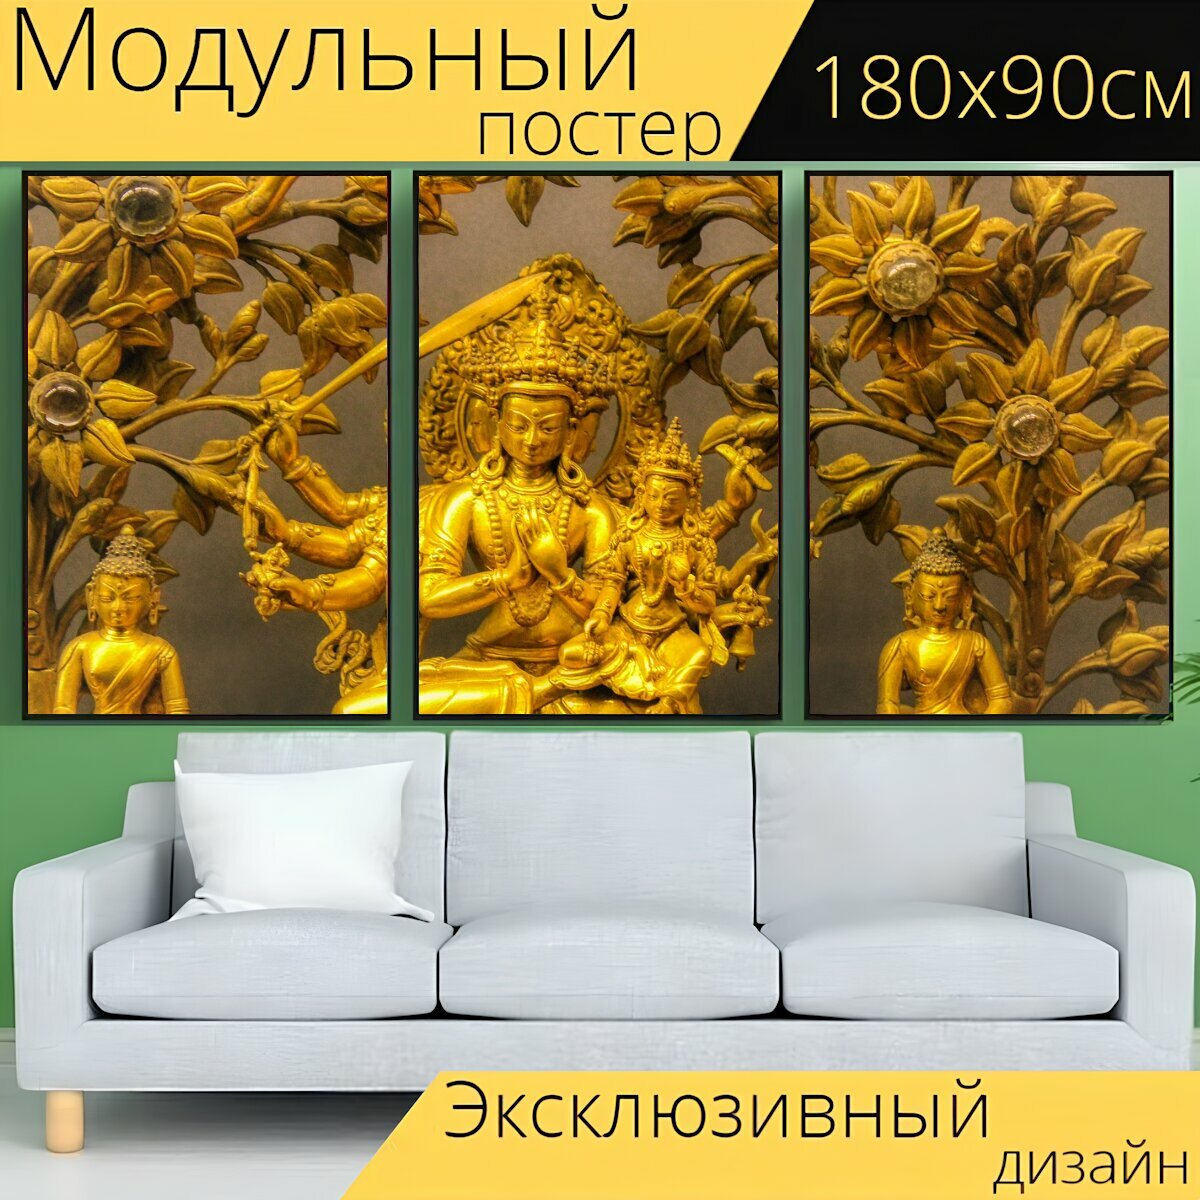 Модульный постер "Йога, тибет, чакры" 180 x 90 см. для интерьера